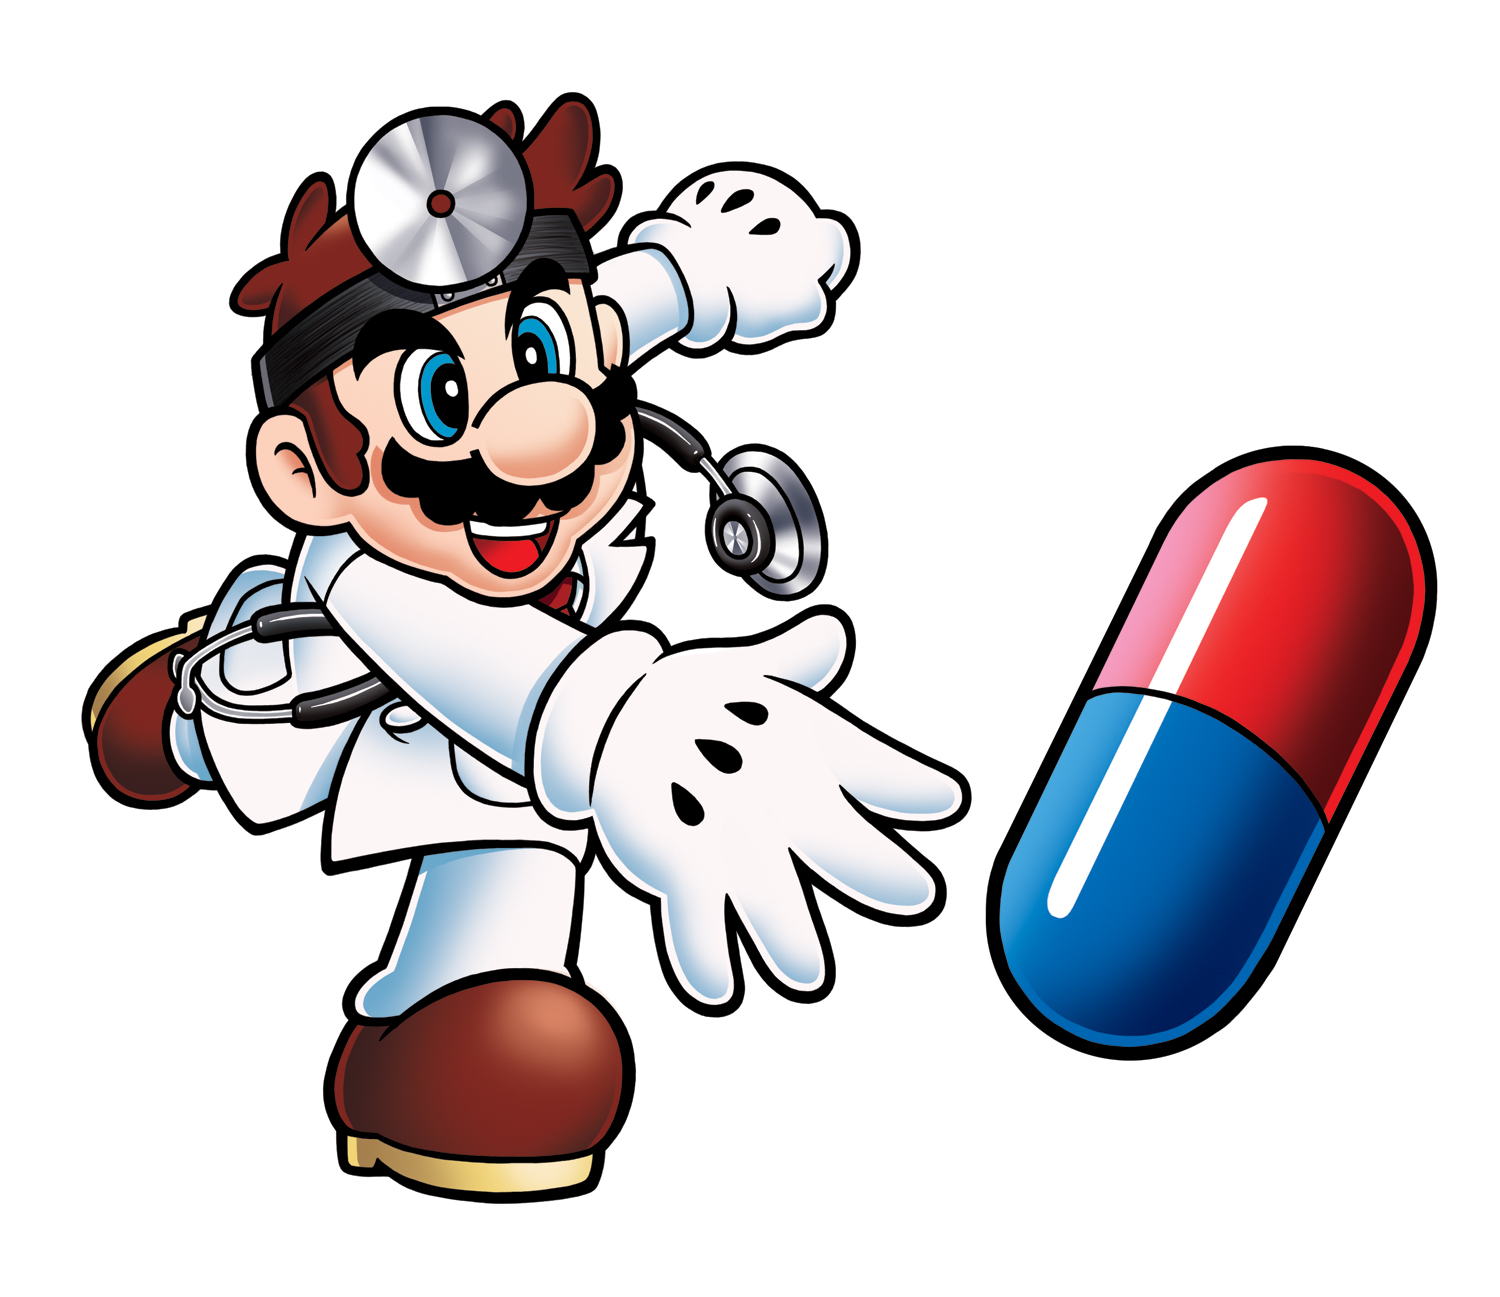 Dr. Mario #24